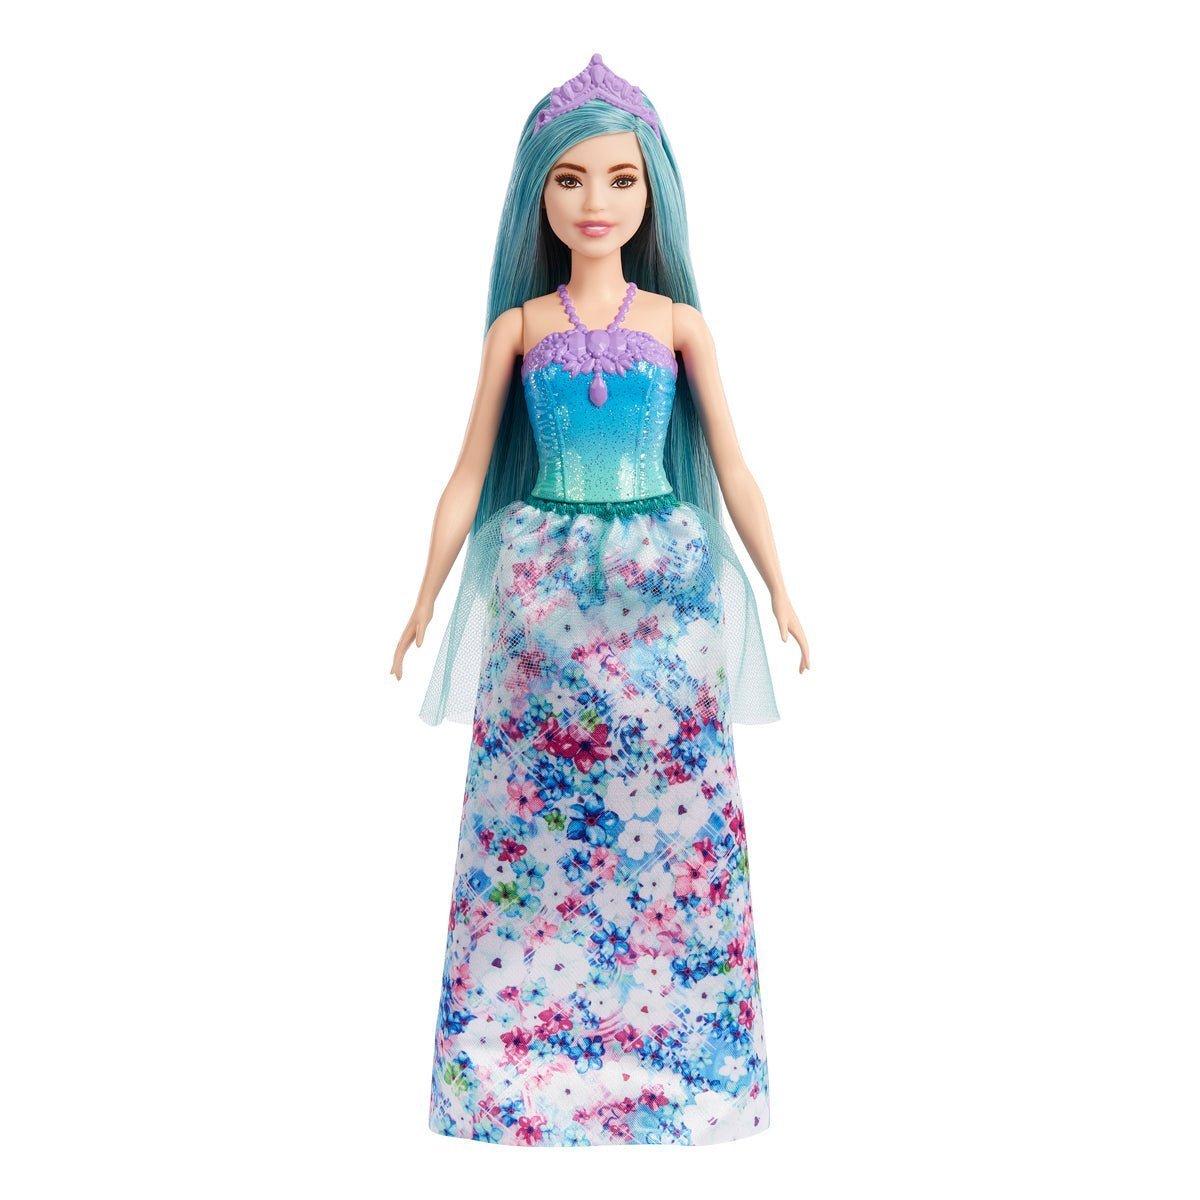 Barbie Dreamtopia Princess Doll Blue Hair